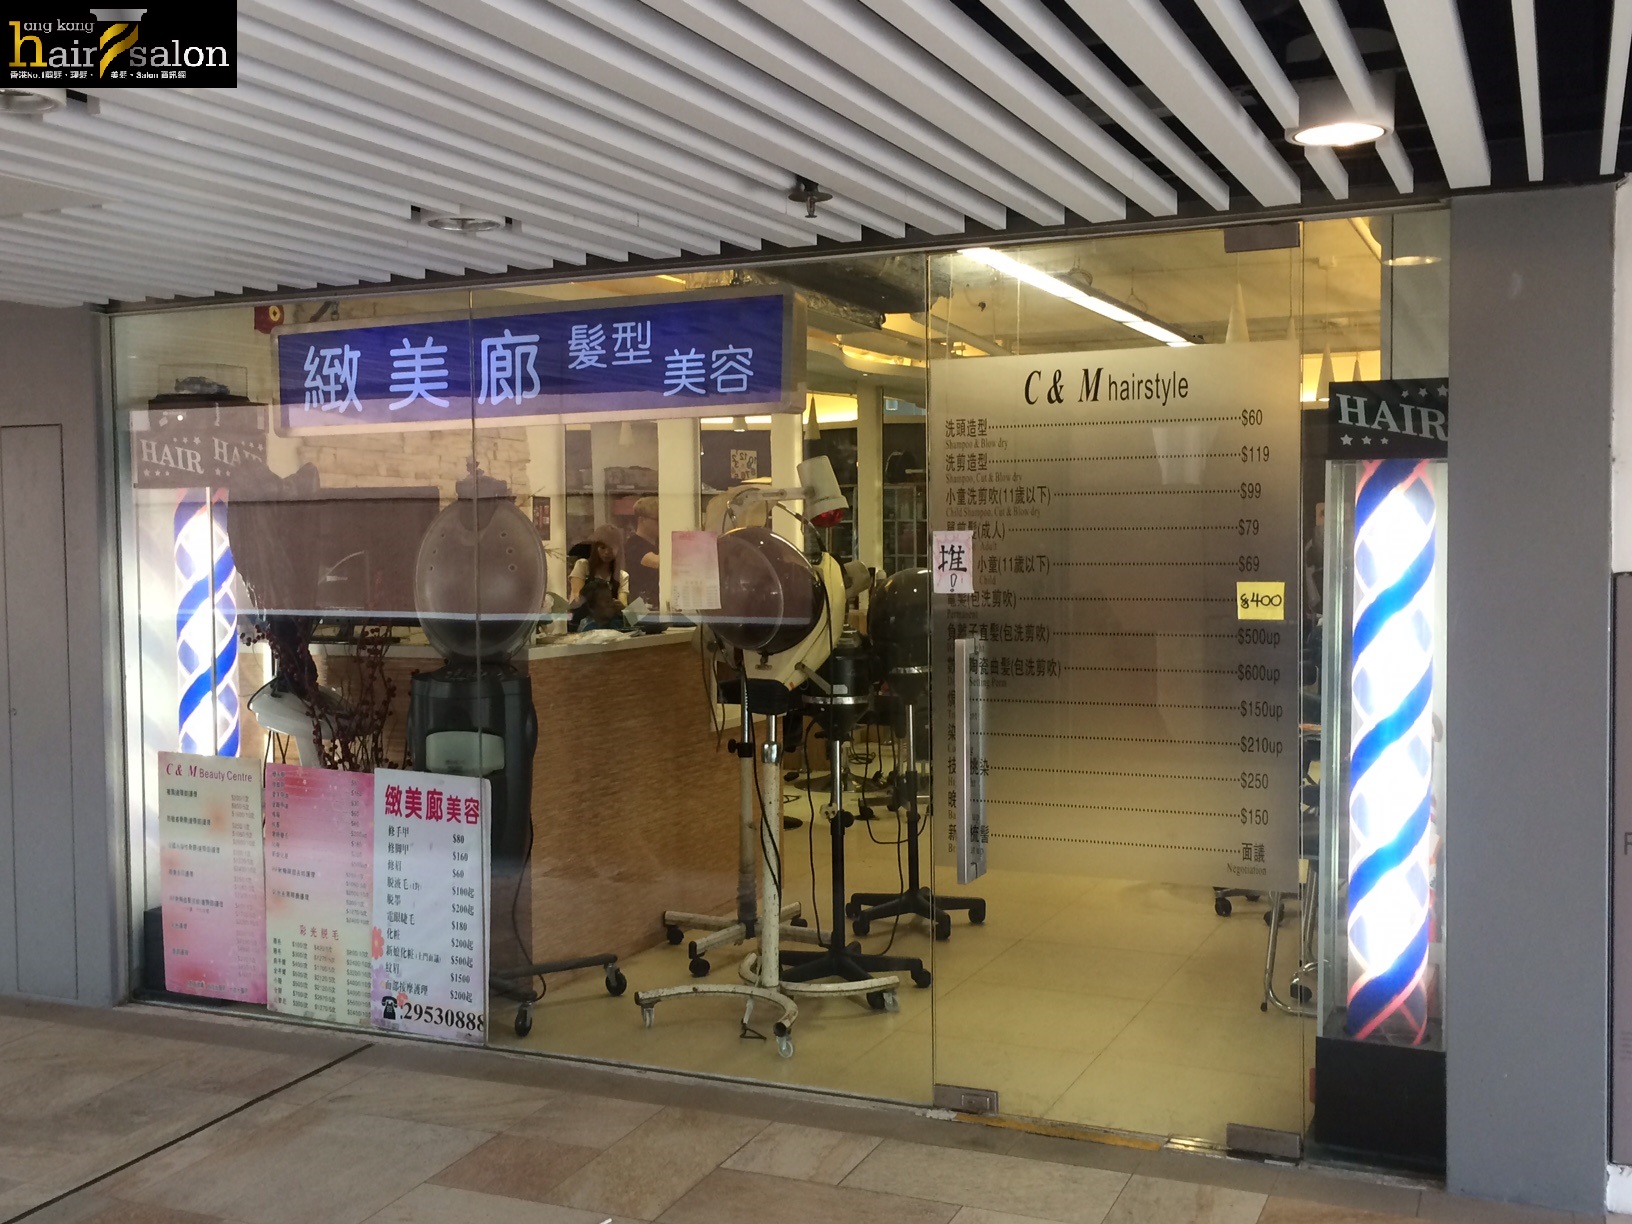 香港美髮網 HK Hair Salon 髮型屋Salon / 髮型師: 緻美廊髮型美容